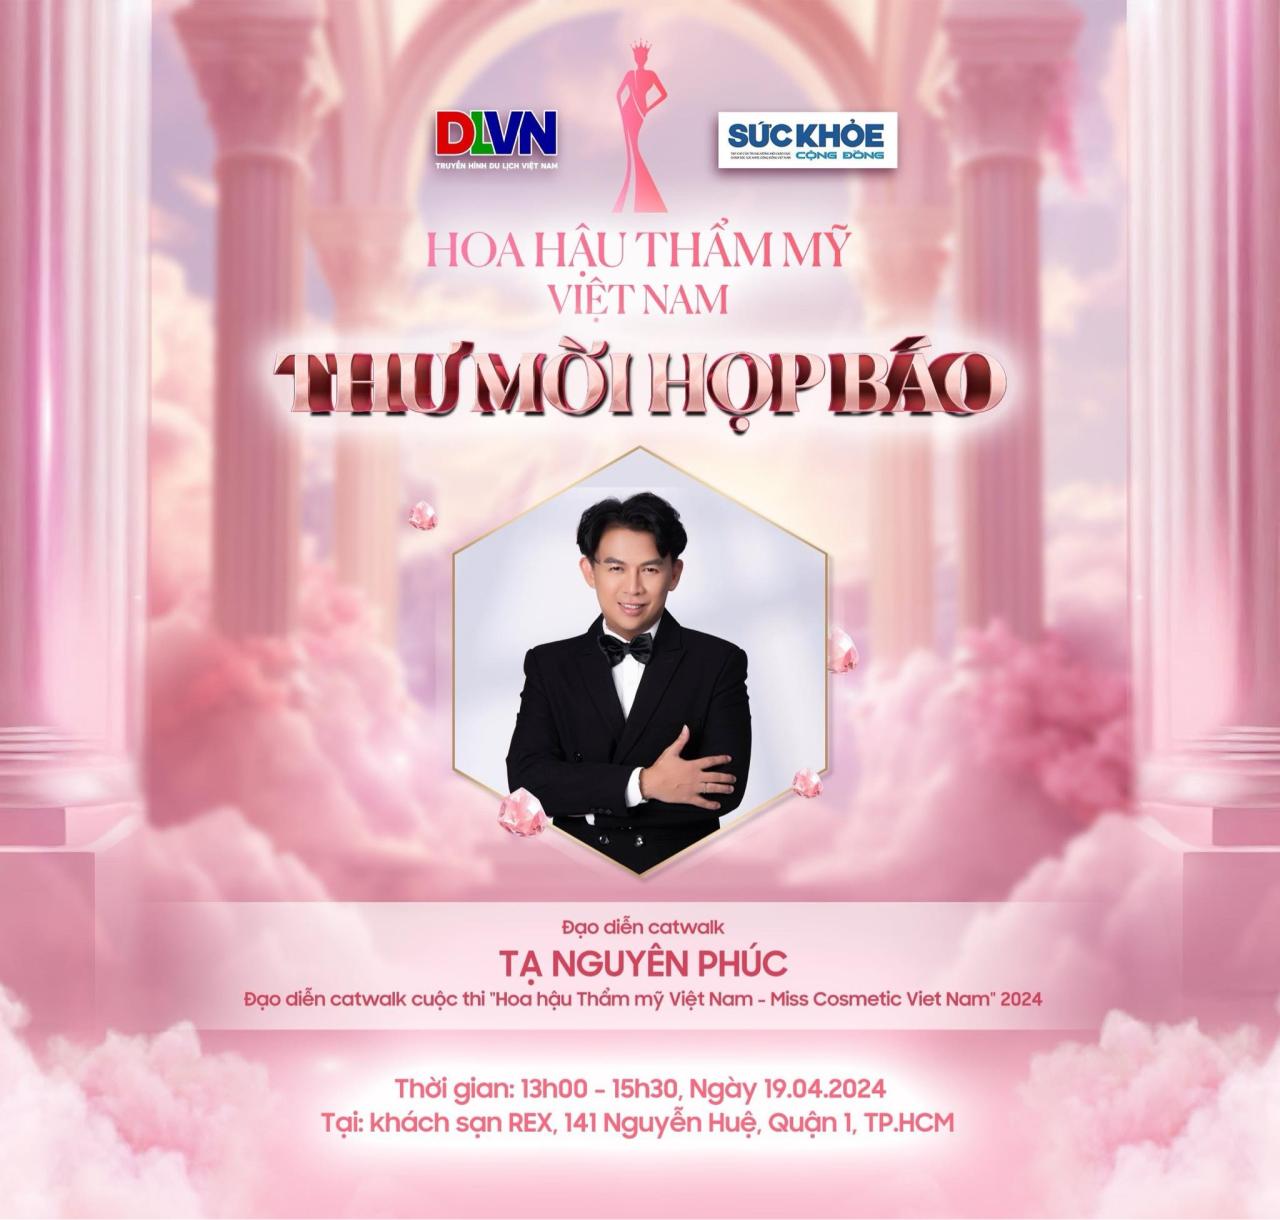 Hoa hau Tham my Viet Nam Miss Cosmetic Viet Nam 2024 6